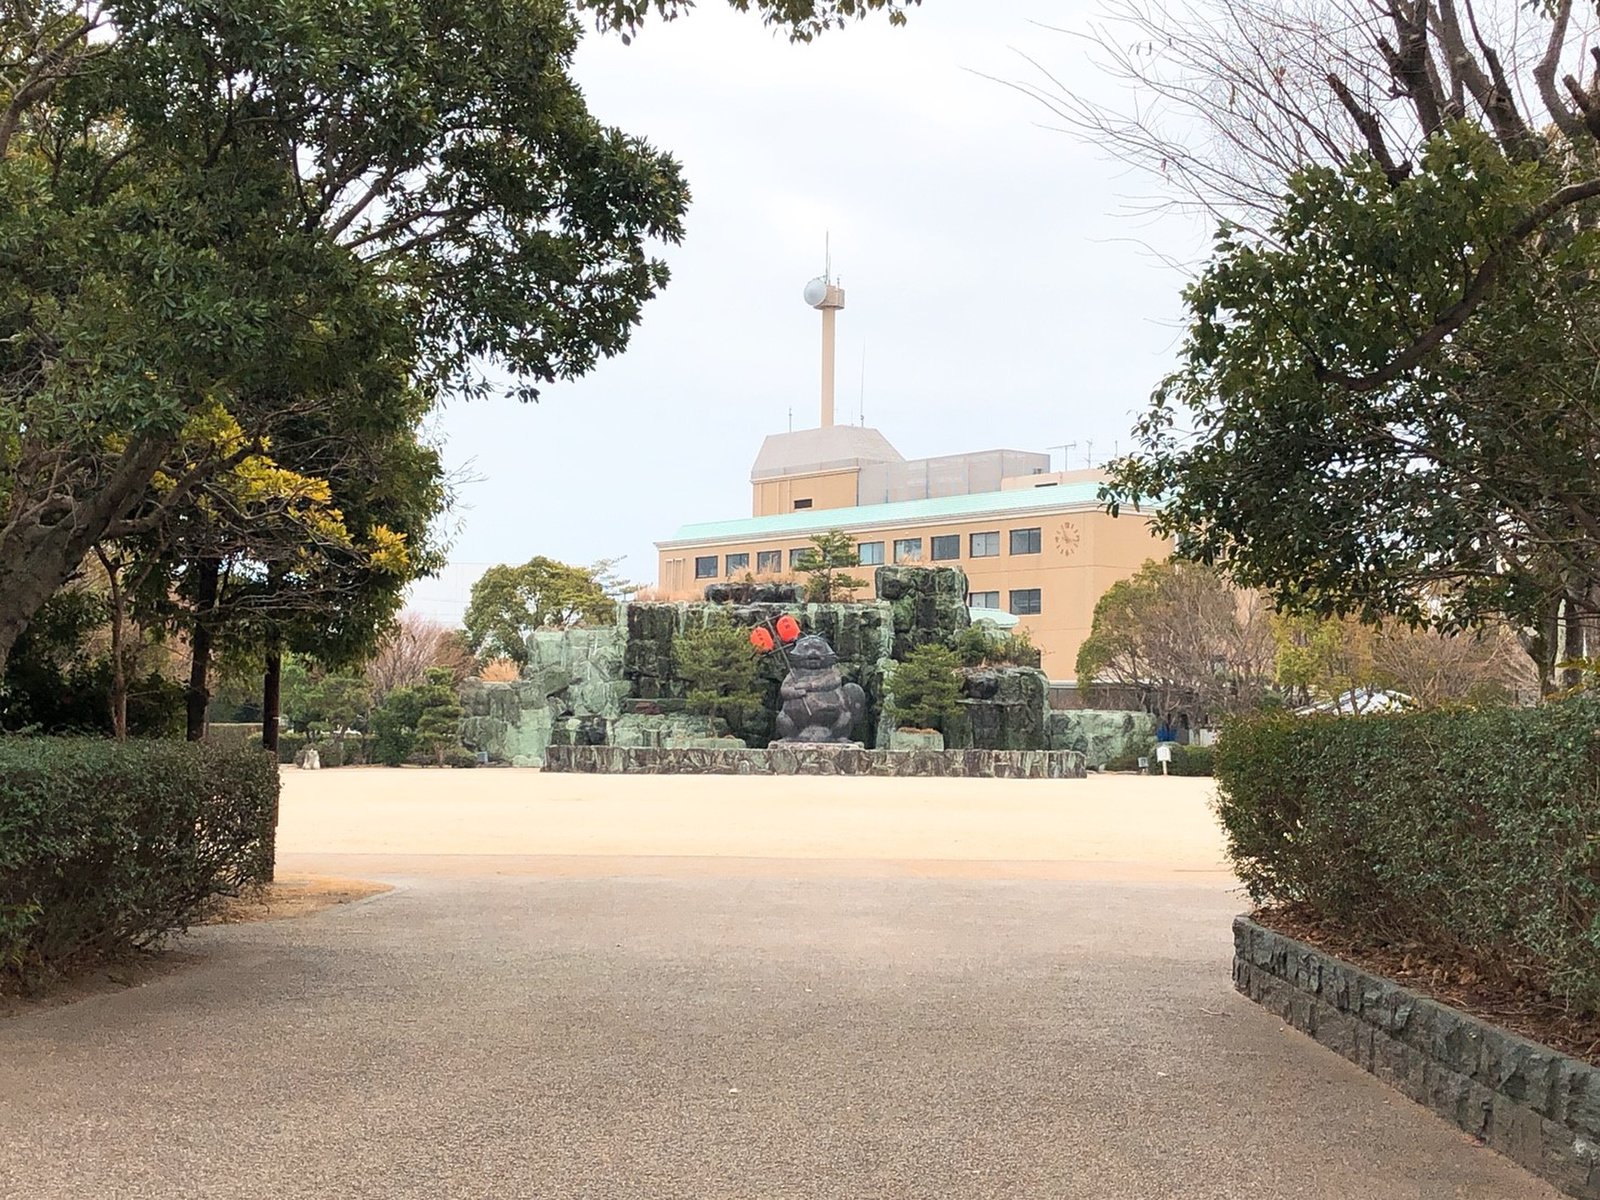 小松島ステーションパーク(たぬき広場・SL広場)